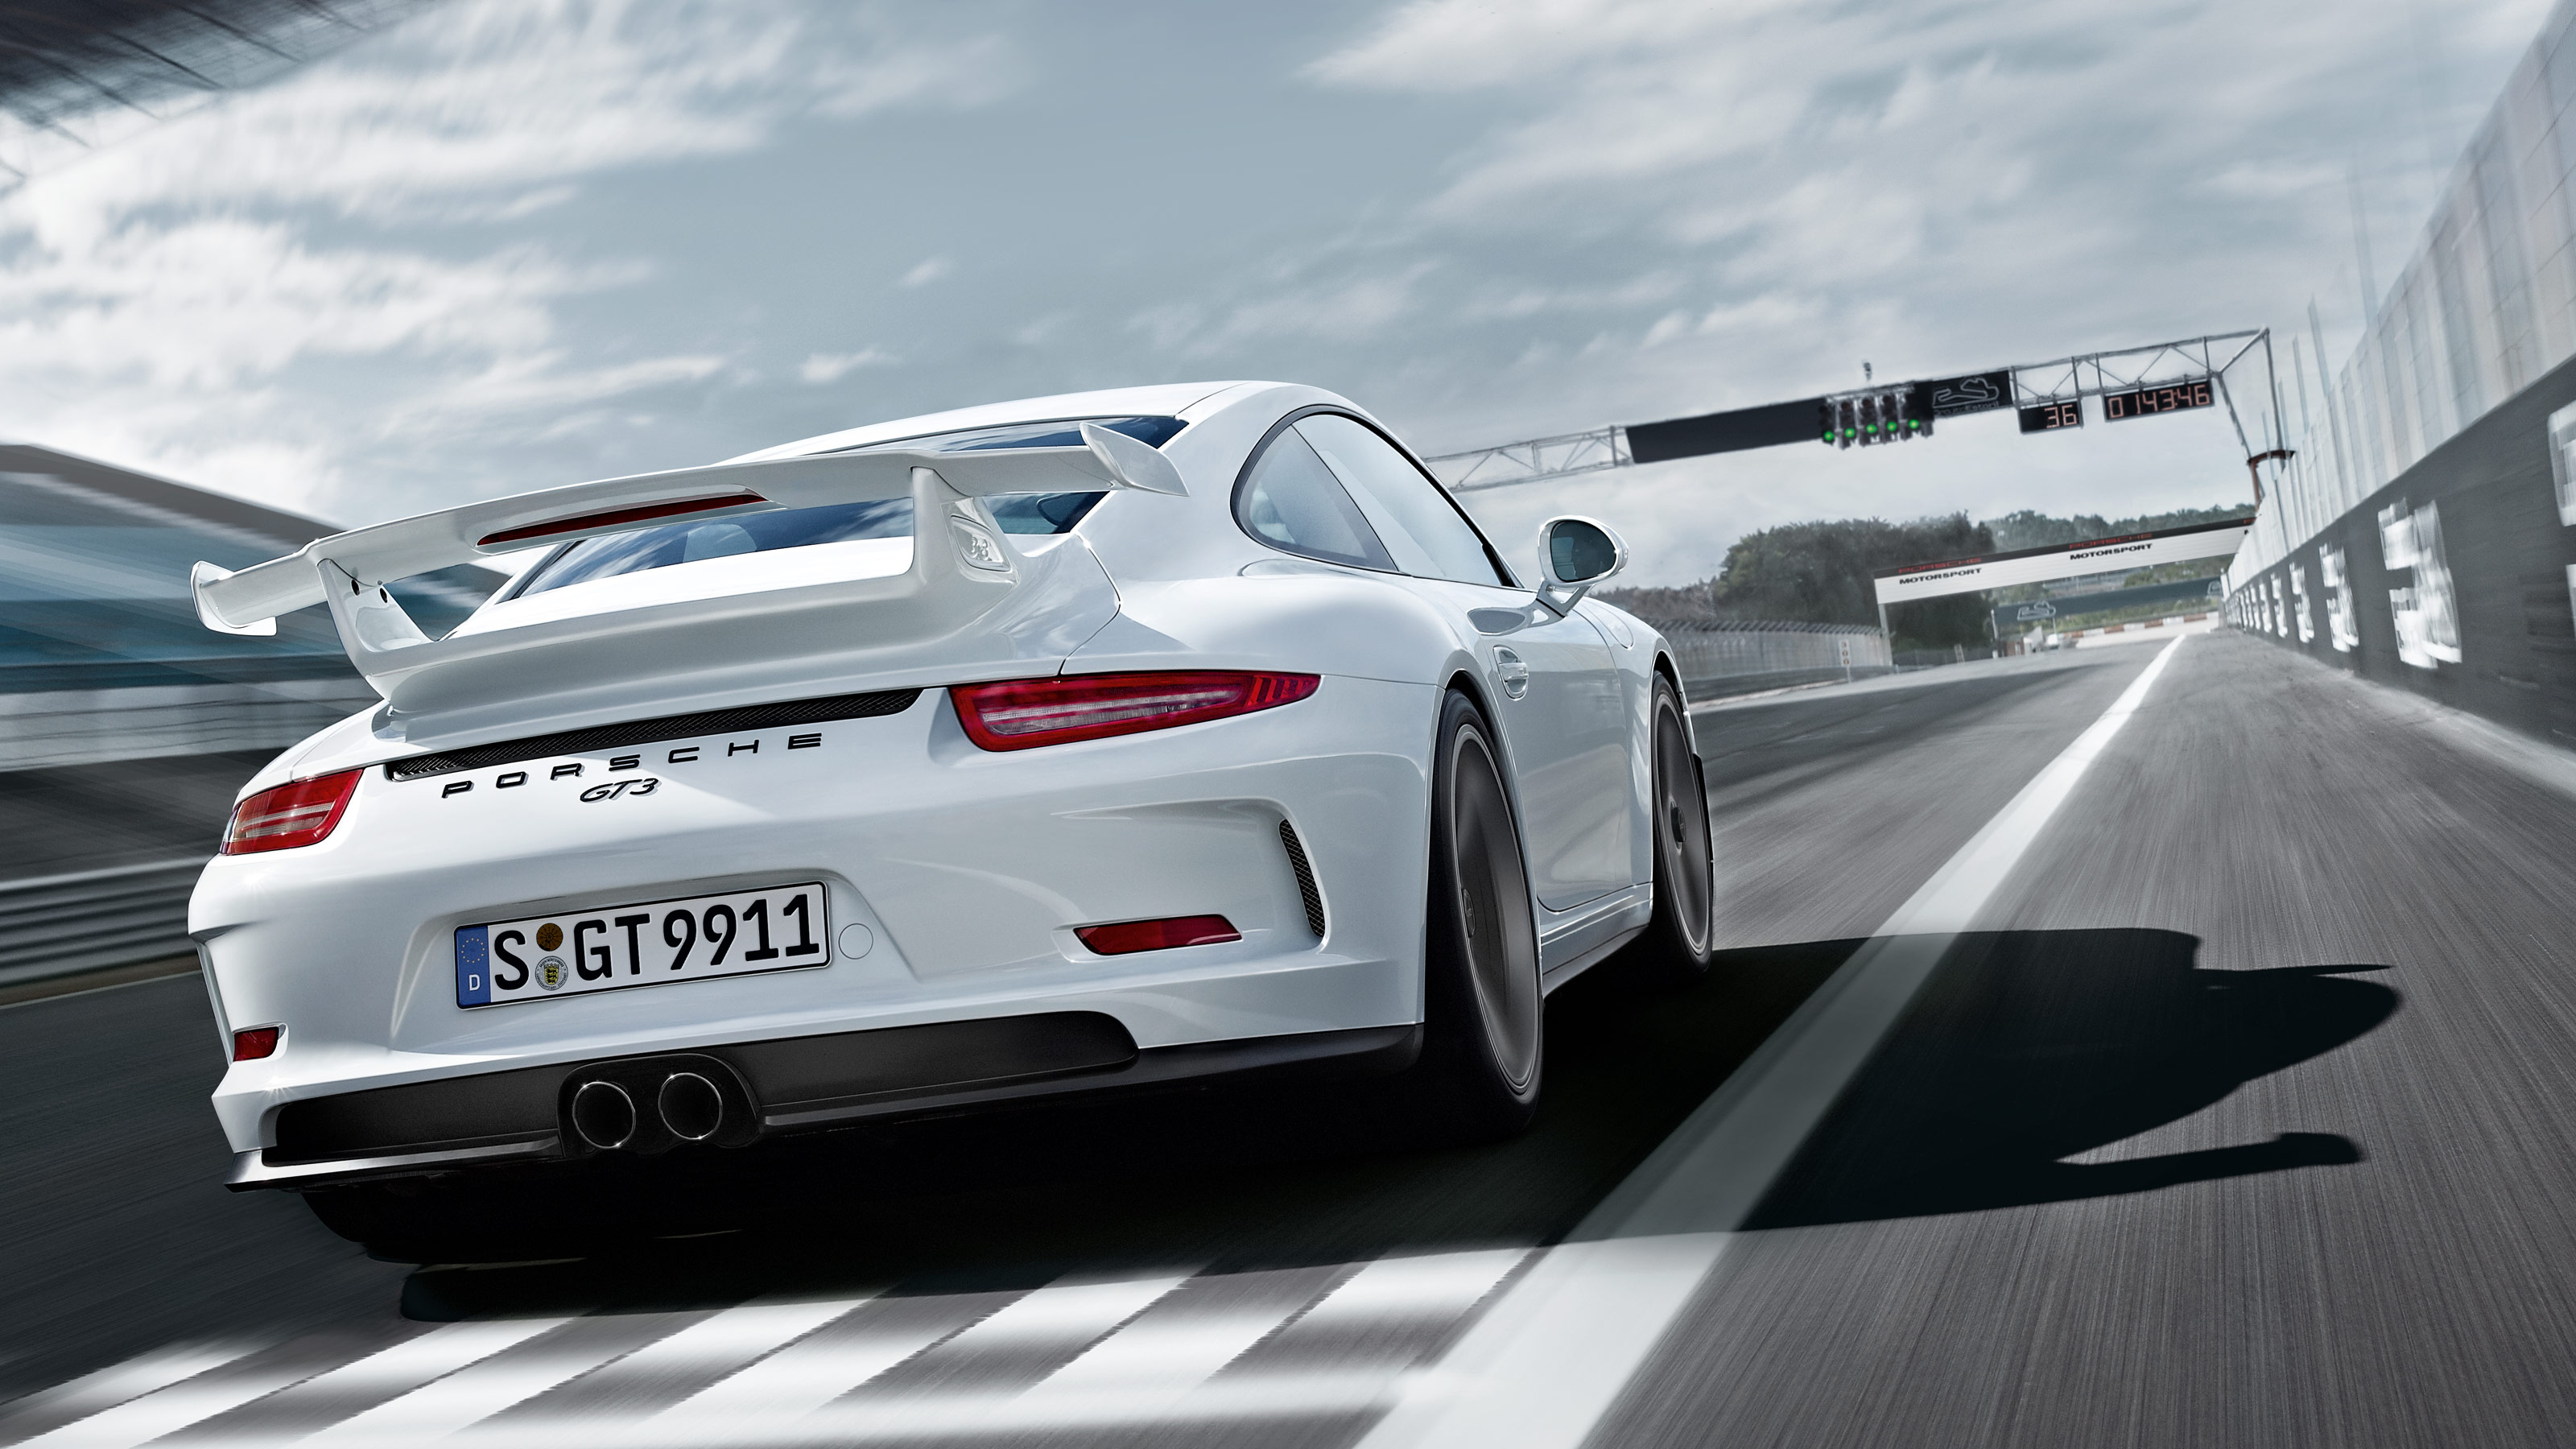 iPhone wallpaper & lock screen Porsche | Porsche iphone wallpaper, Car  logos, Luxury car logos